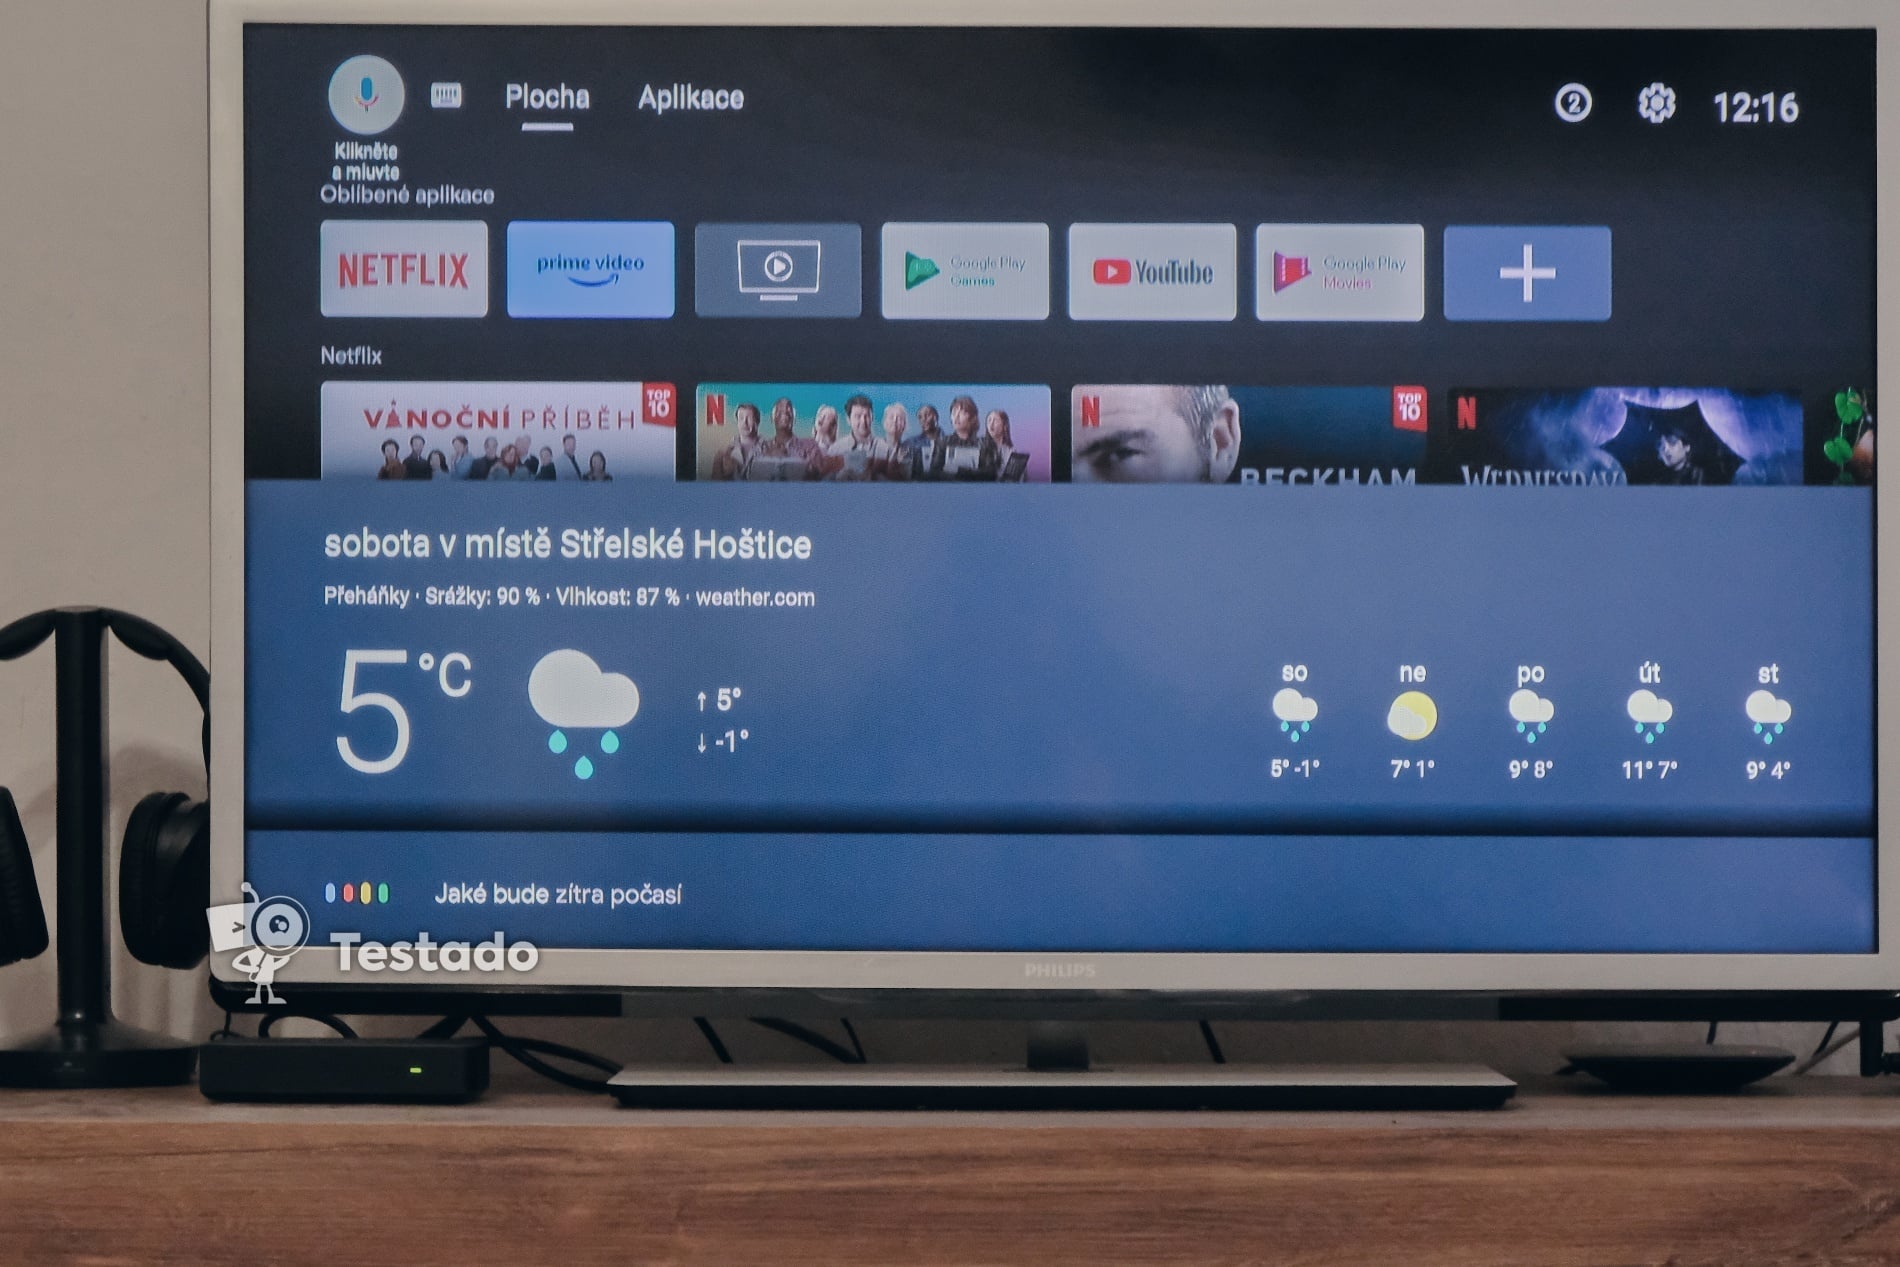 Tesla MediaBox XT850 android TV hlasové ovládání